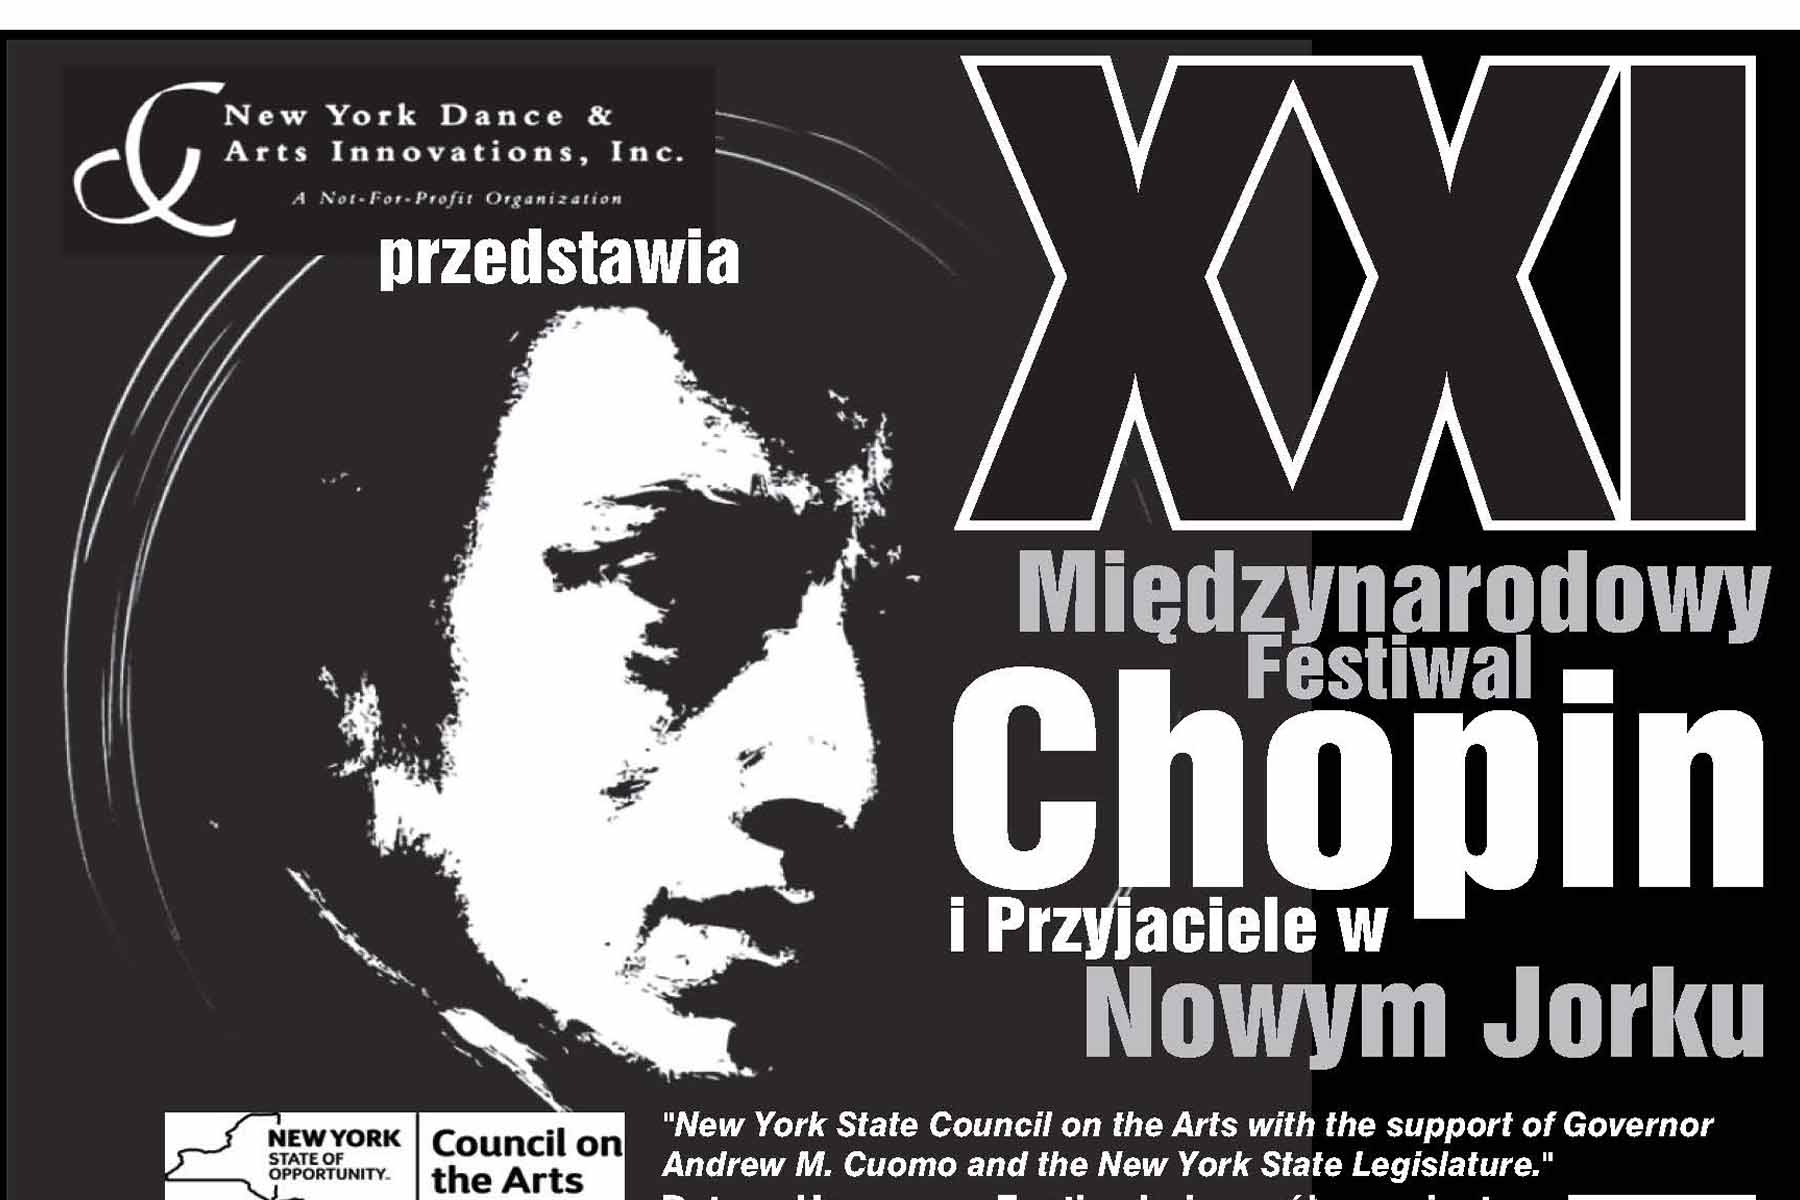 Nowy Jork: Międzynarodowy Festiwal Chopin i Przyjaciele